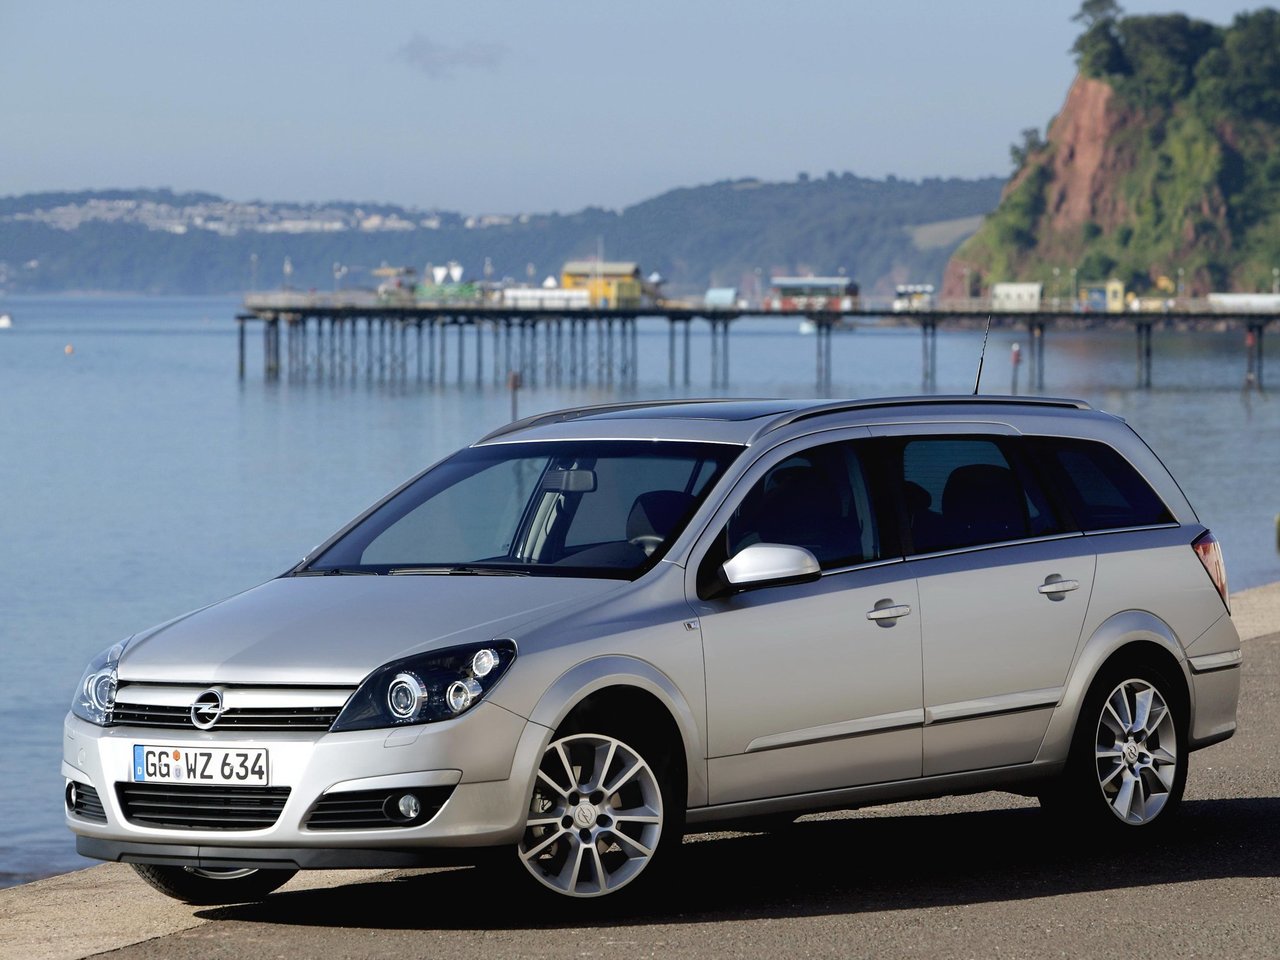 Расход газа шести комплектаций универсала пять дверей Opel Astra. Разница стоимости заправки газом и бензином. Автономный пробег до и после установки ГБО.